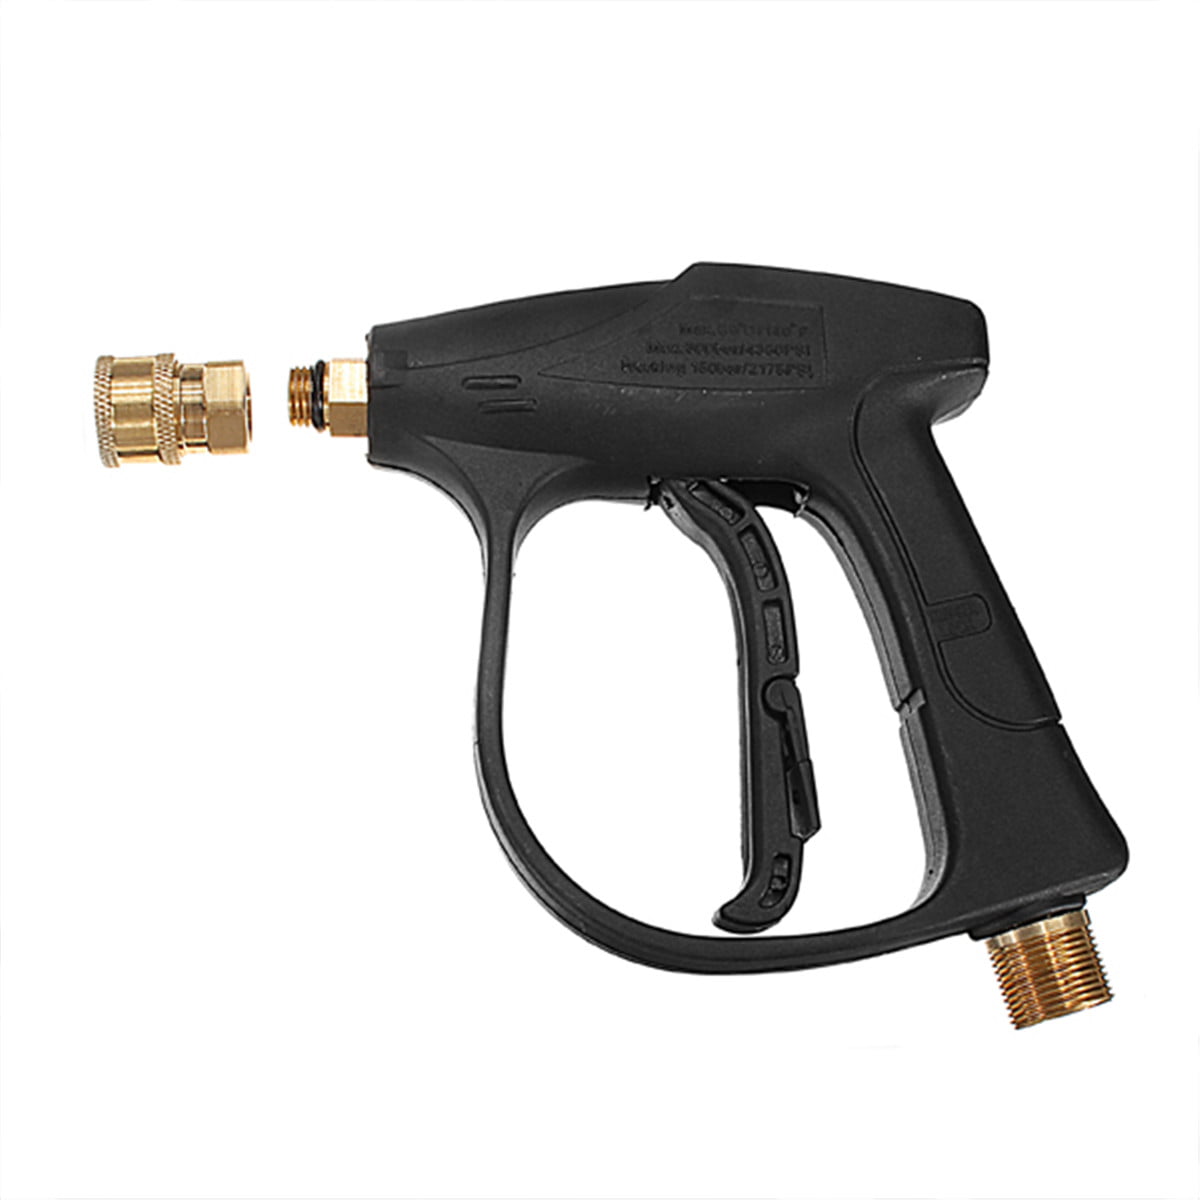 Adjust Pressure Washer Trigger Gun Variable Nozzle  Lance For Black Decker 